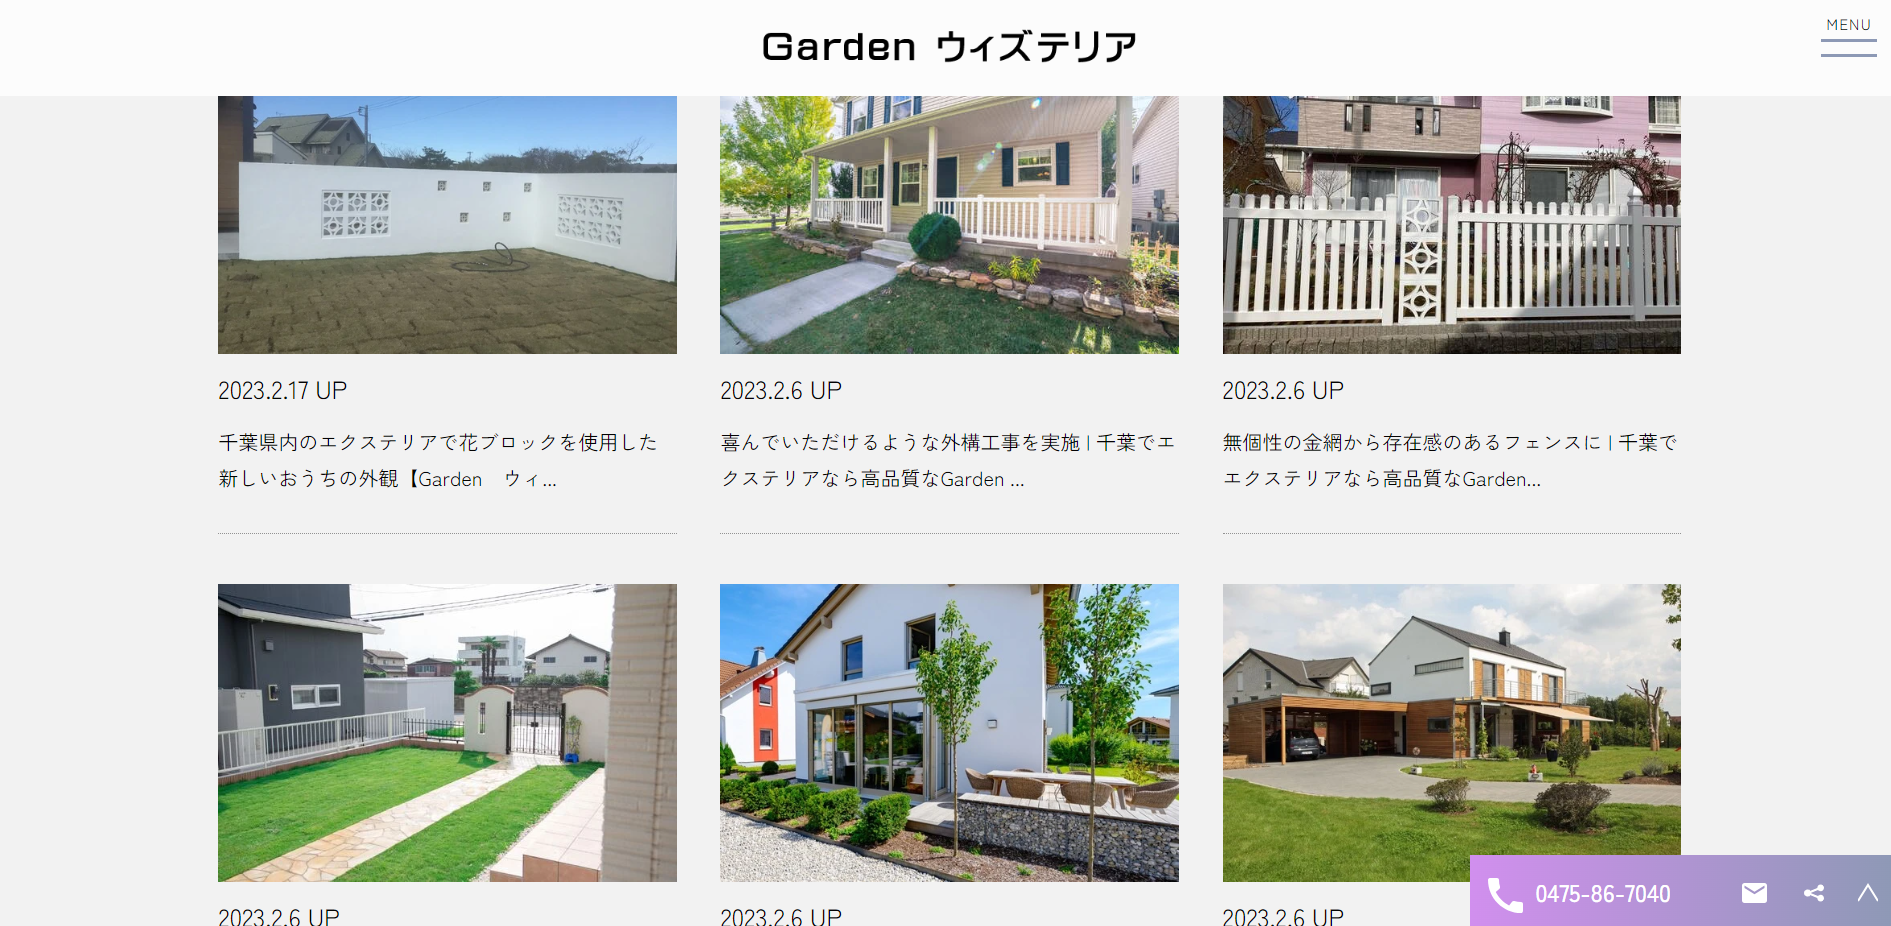 千葉県で評判のおすすめ外構業者ランキング 第14位 Garden ウィズテリア